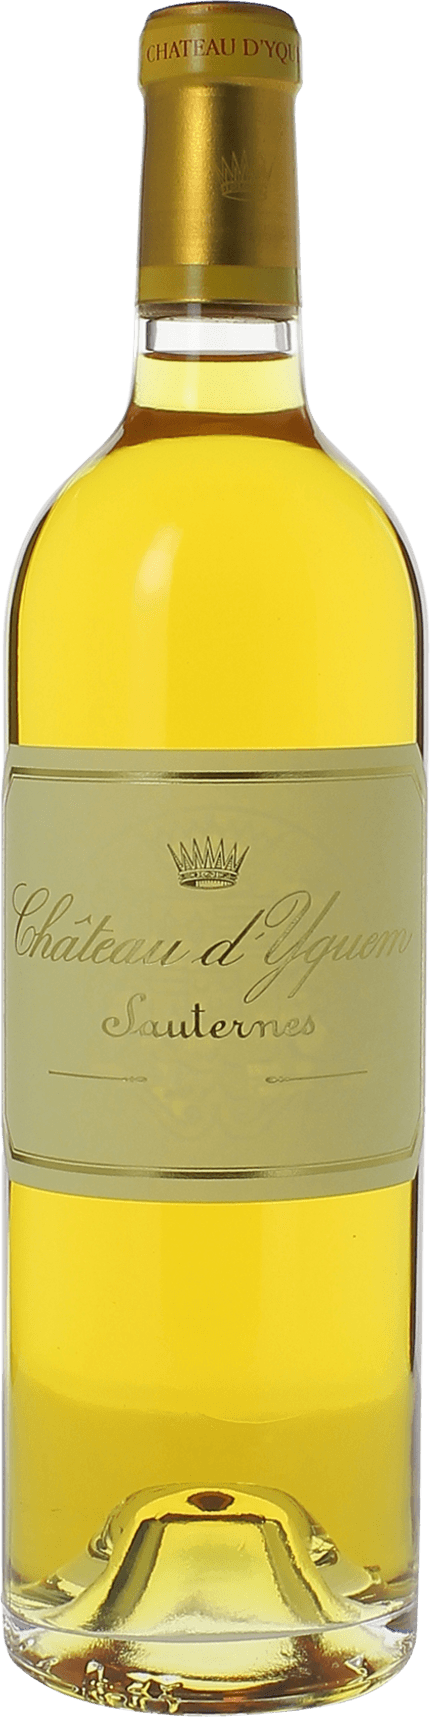 Yquem 1994 1er Grand cru class Sauternes, Bordeaux blanc